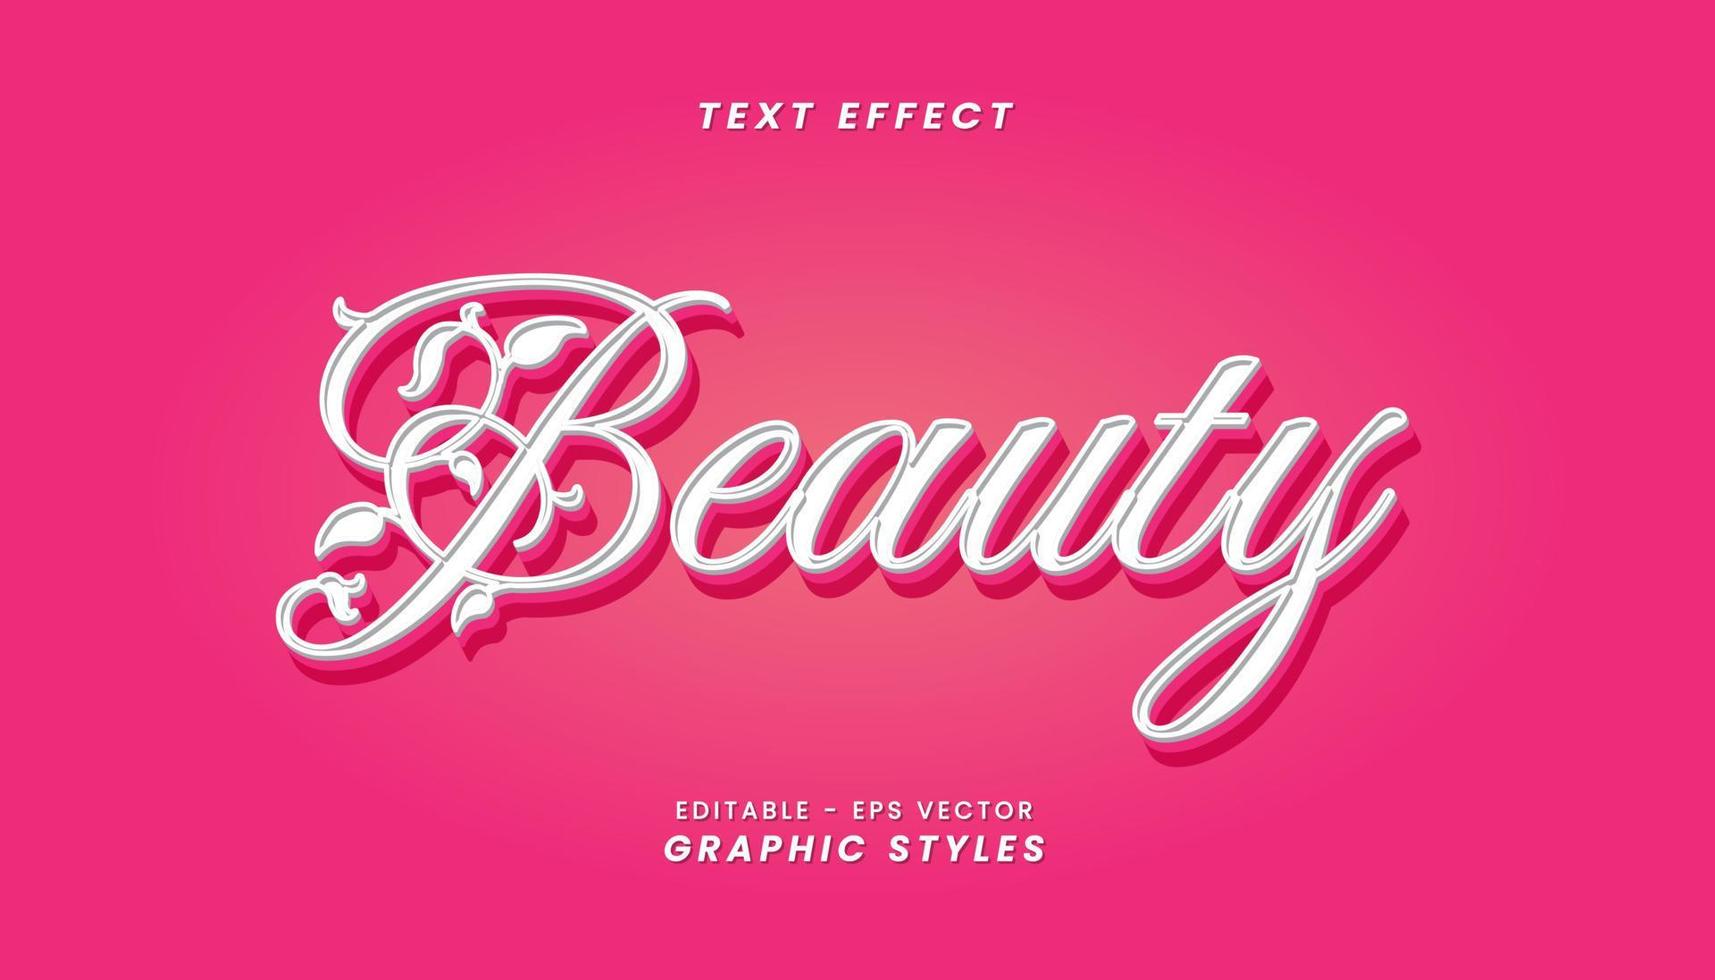 Beauty-Texteffekt mit 3D-Buchstaben. vektor